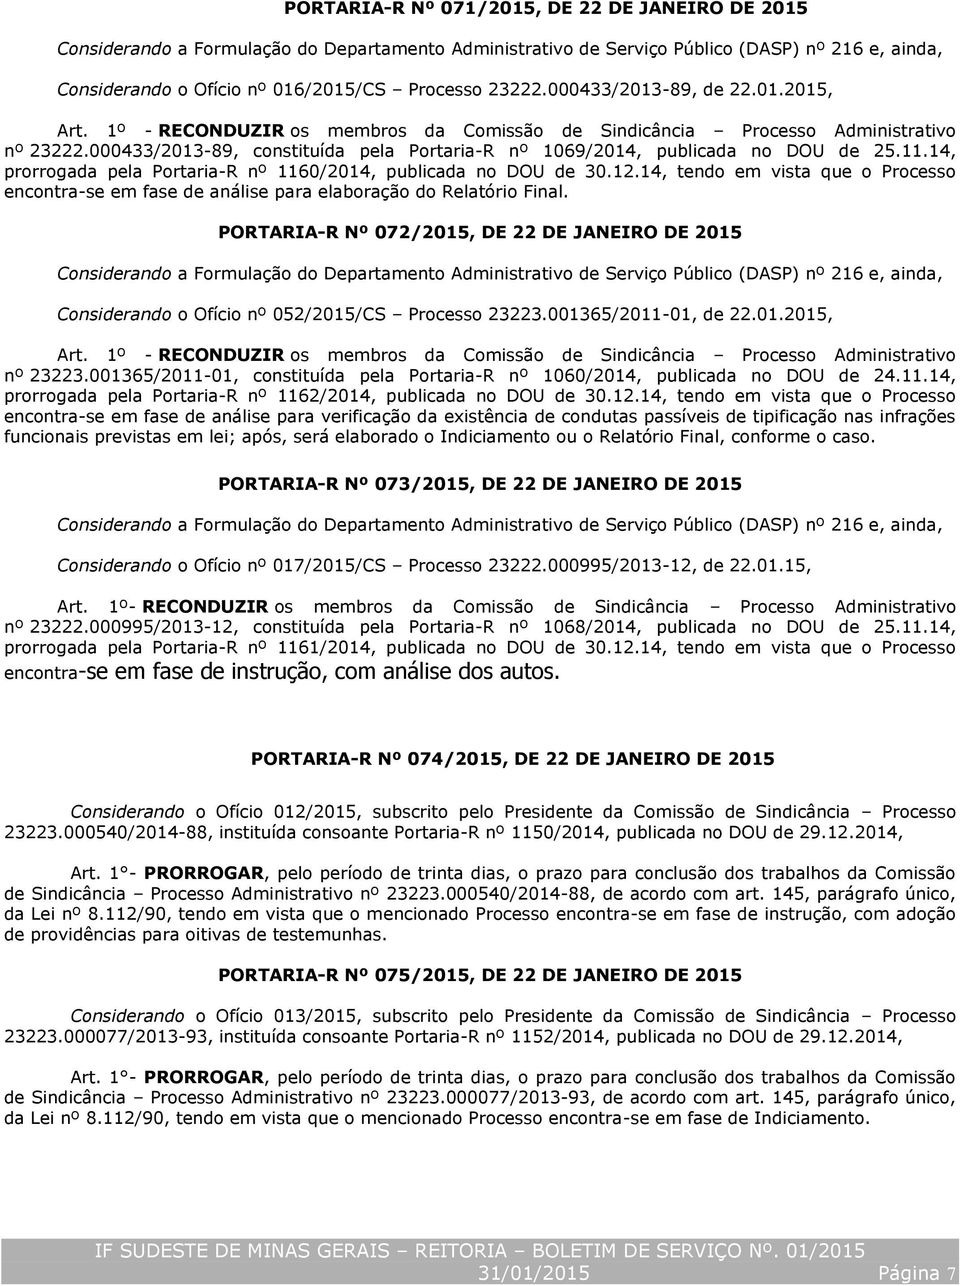 000433/2013-89, constituída pela Portaria-R nº 1069/2014, publicada no DOU de 25.11.14, prorrogada pela Portaria-R nº 1160/2014, publicada no DOU de 30.12.